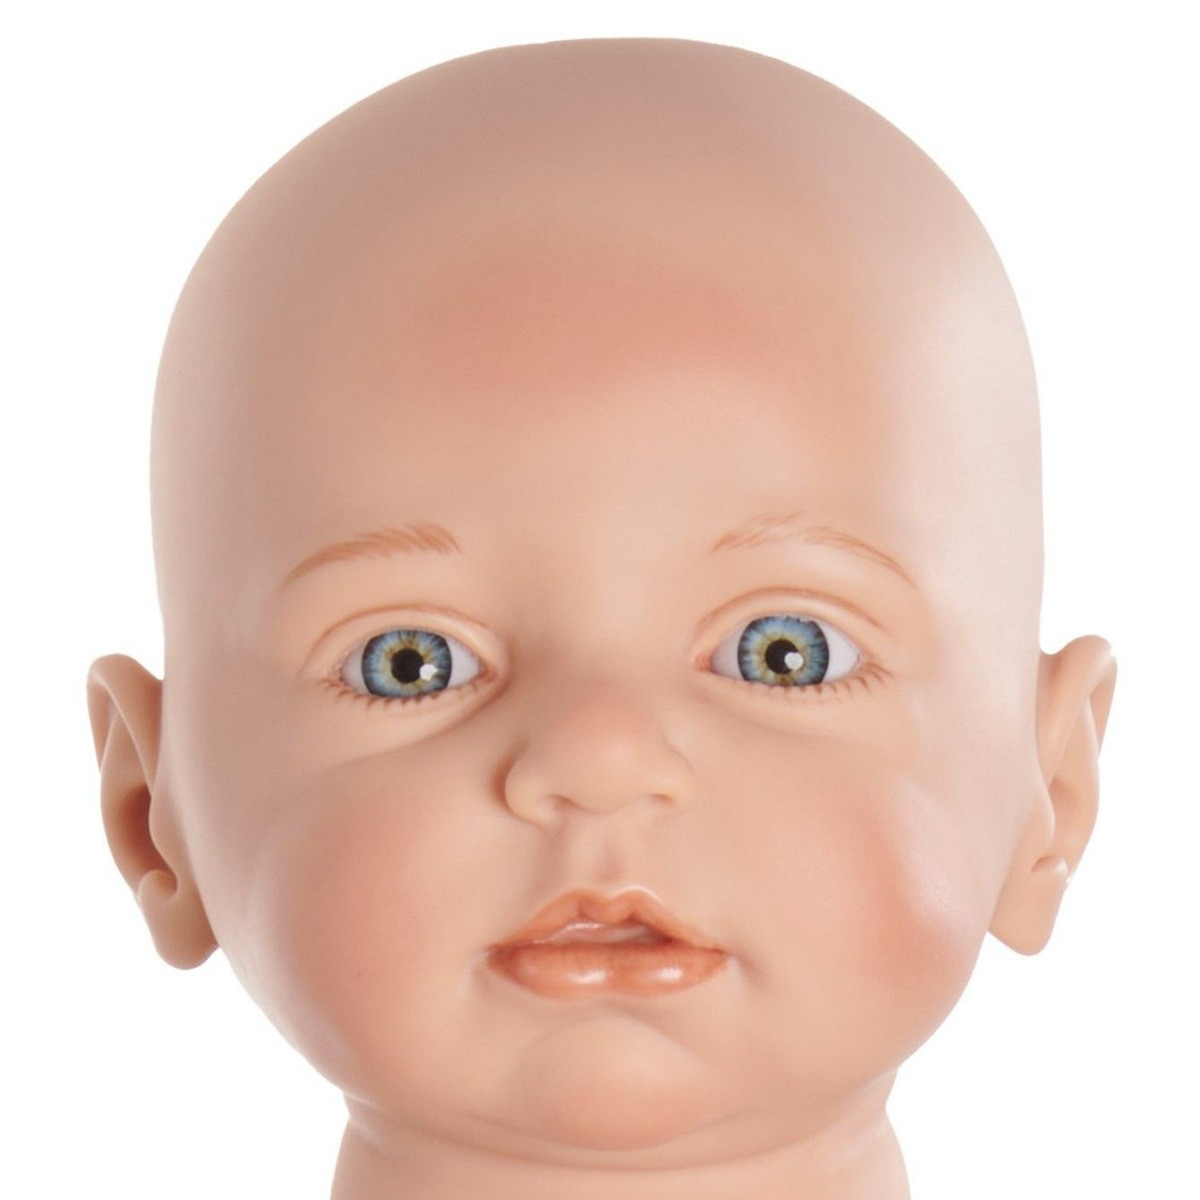 Bébé 3-6 mois 66cm 4,5kg - Poupon de Portage Lesté et Articulé